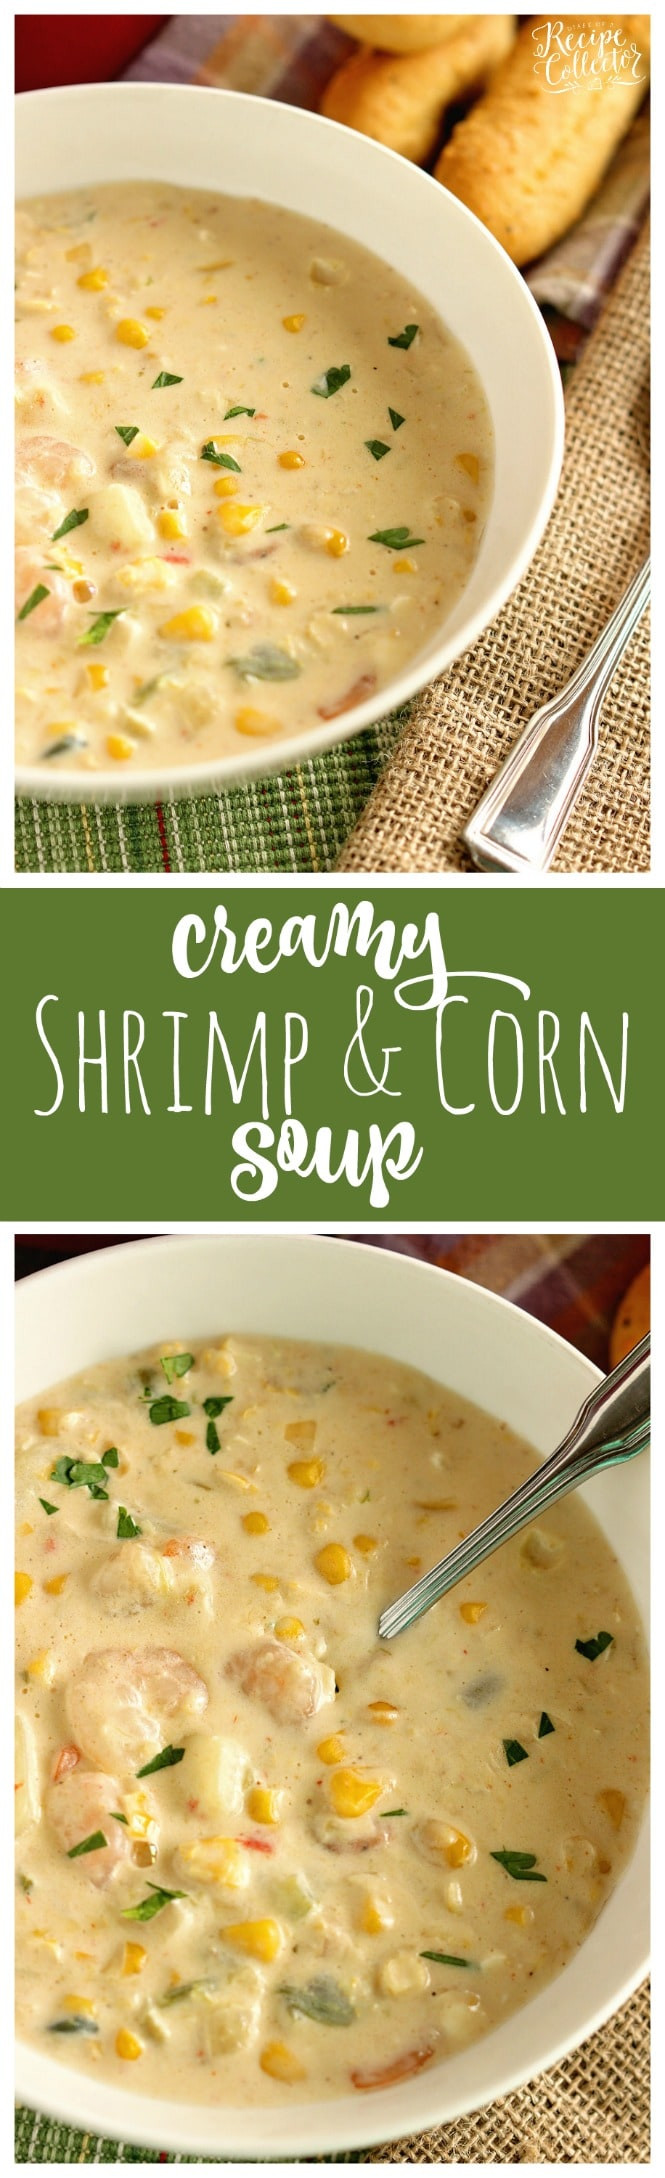 Shrimp Corn Soup
 Creamy Shrimp & Corn Soup Diary of A Recipe Collector